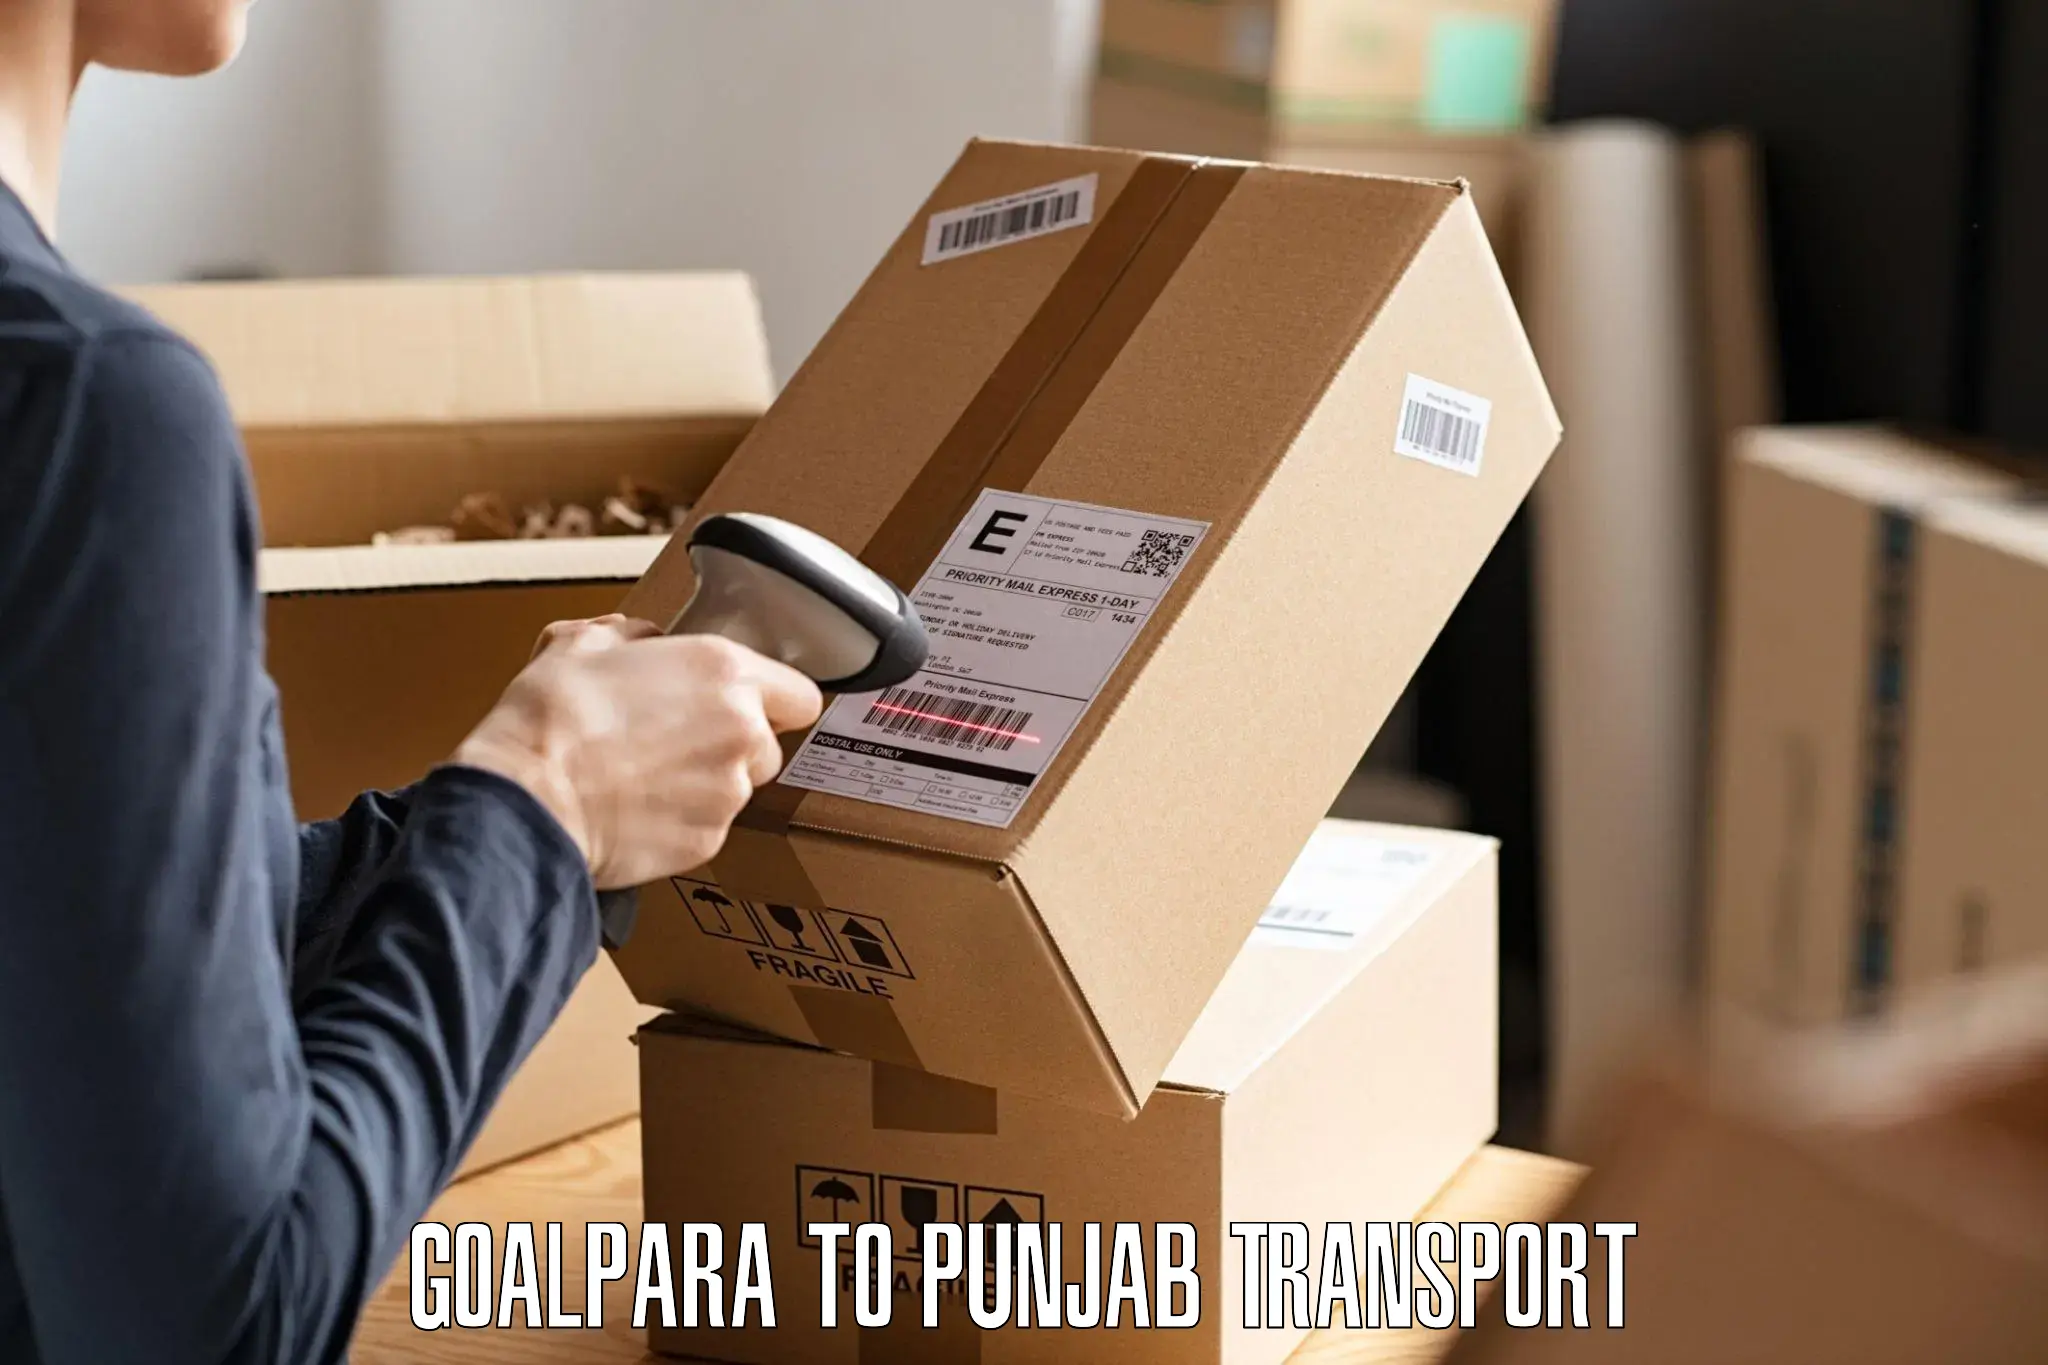 Bike shipping service Goalpara to Nabha